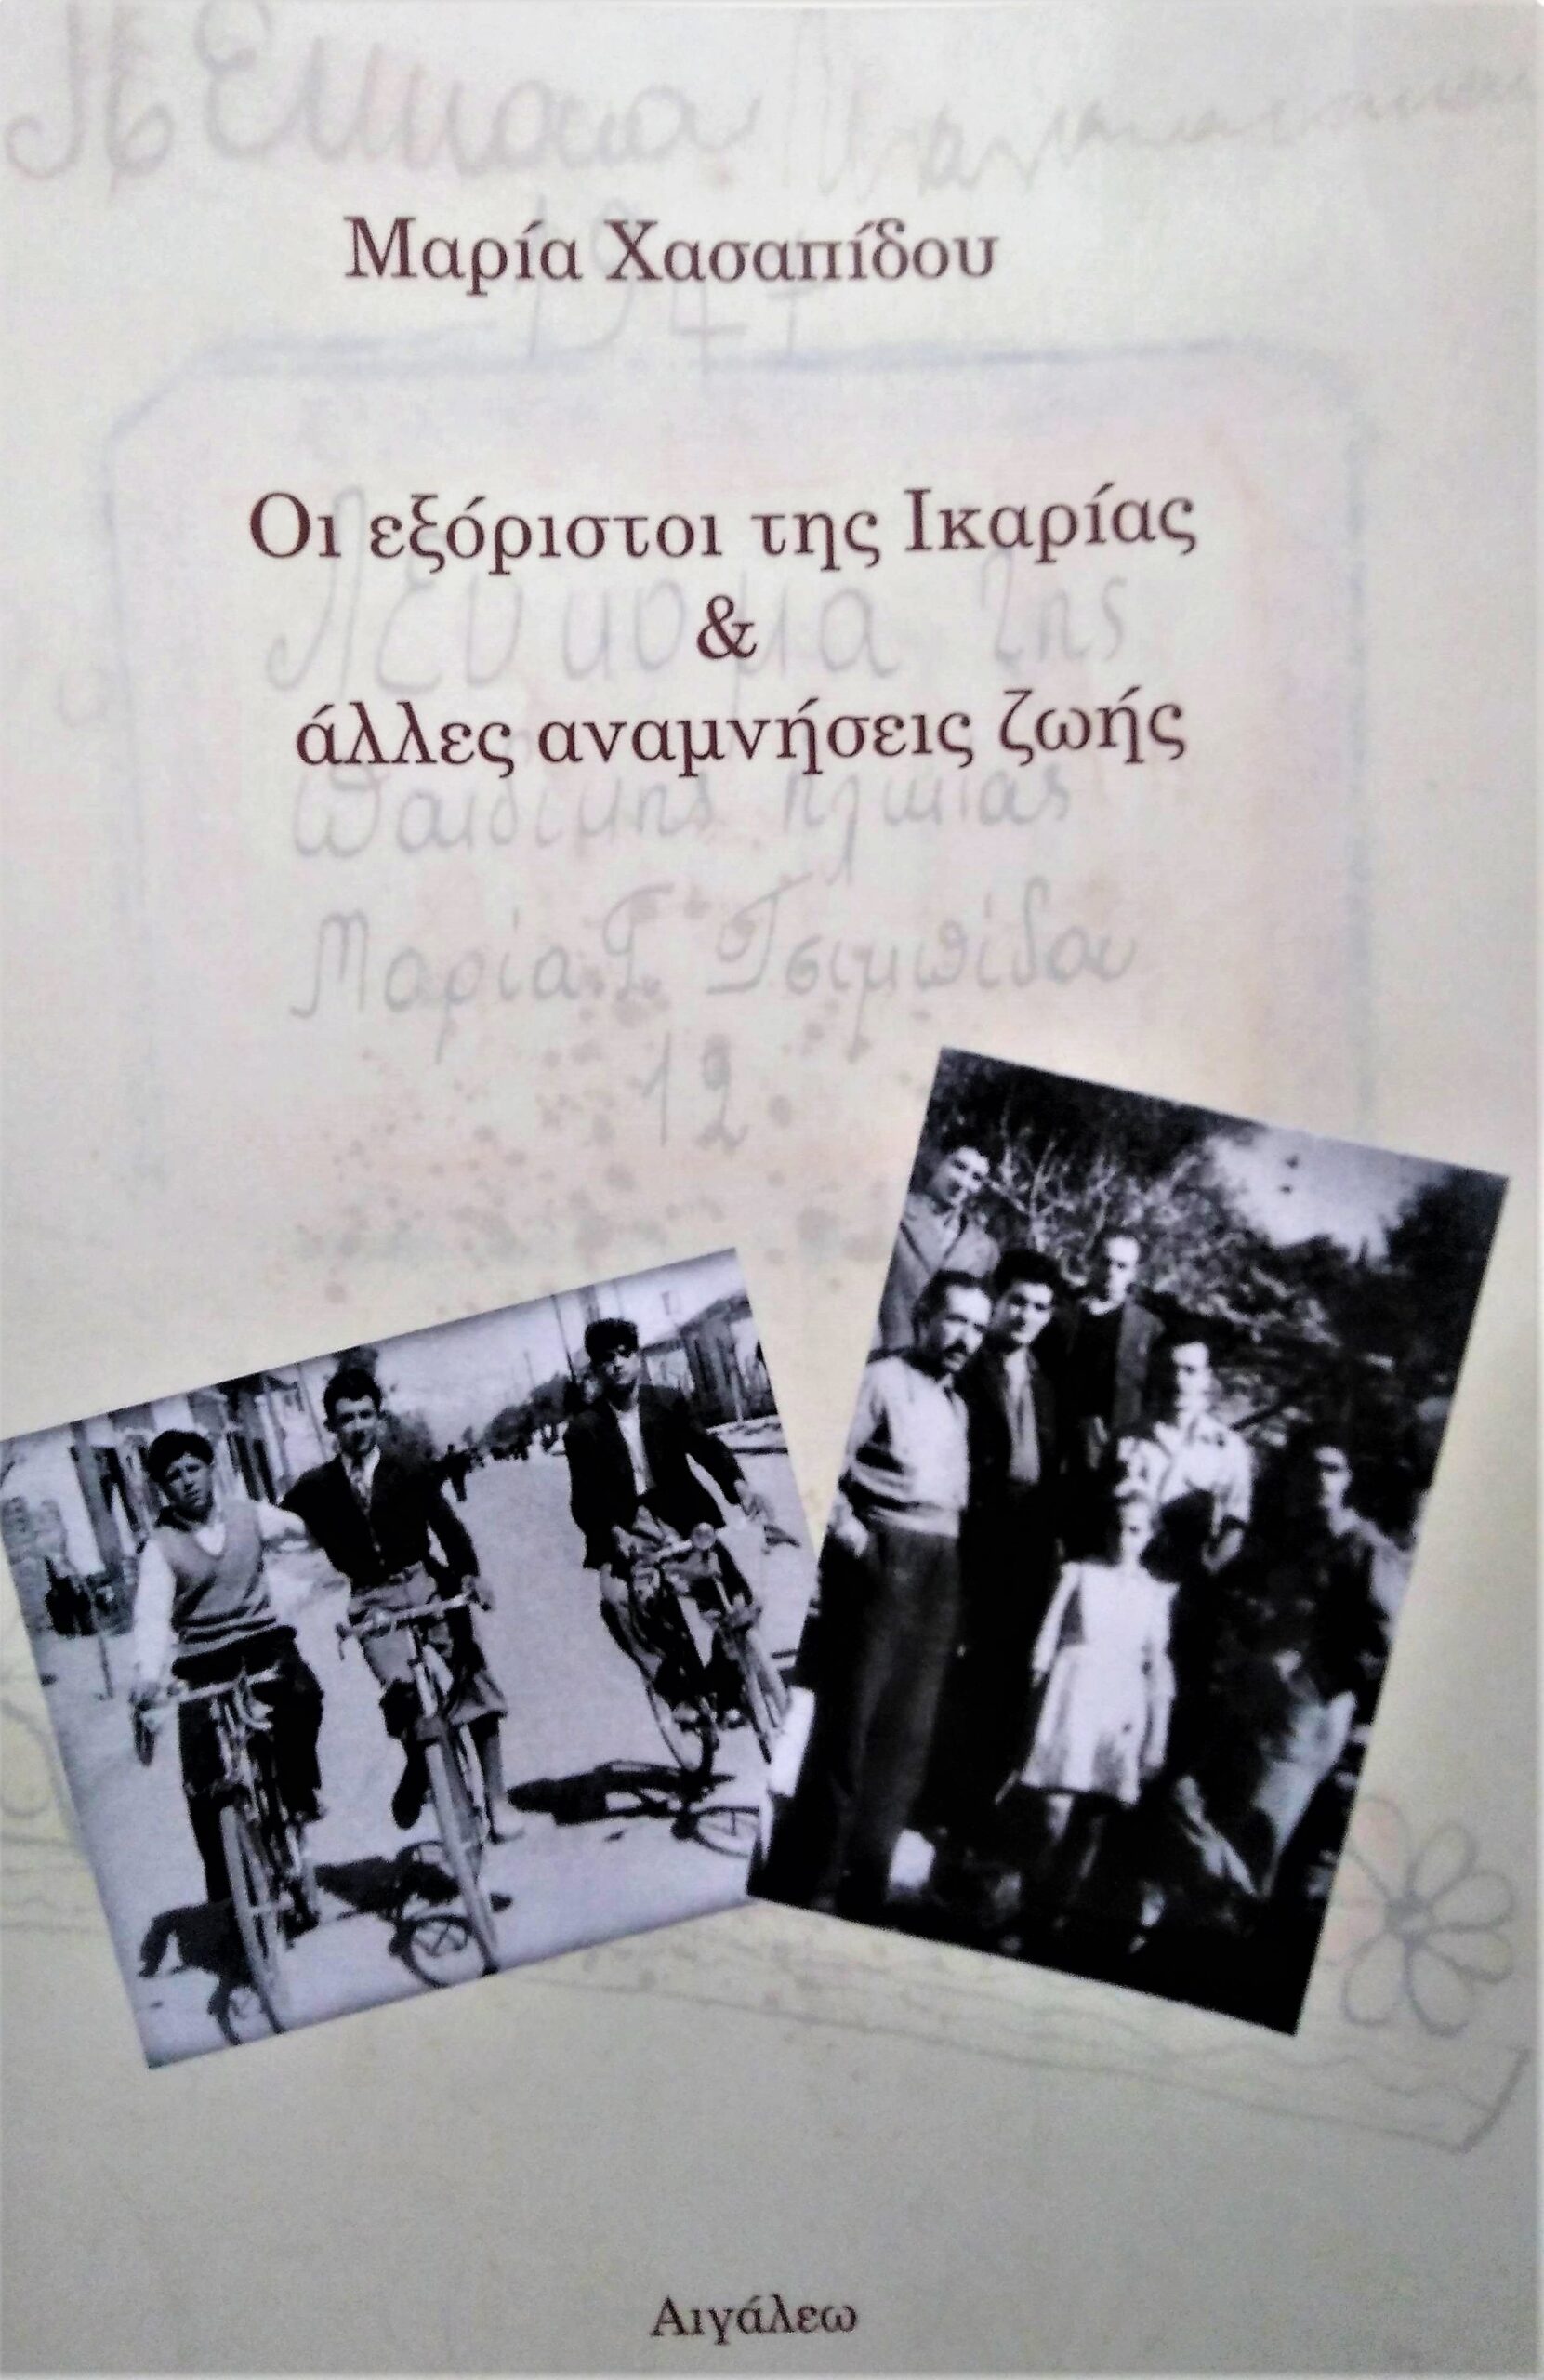 Επιτυχής παρουσίαση του βιβλίου «Οι εξόριστοι της Ικαρίας και άλλες αναμνήσεις ζωής» της Μ. Χασαπίδου